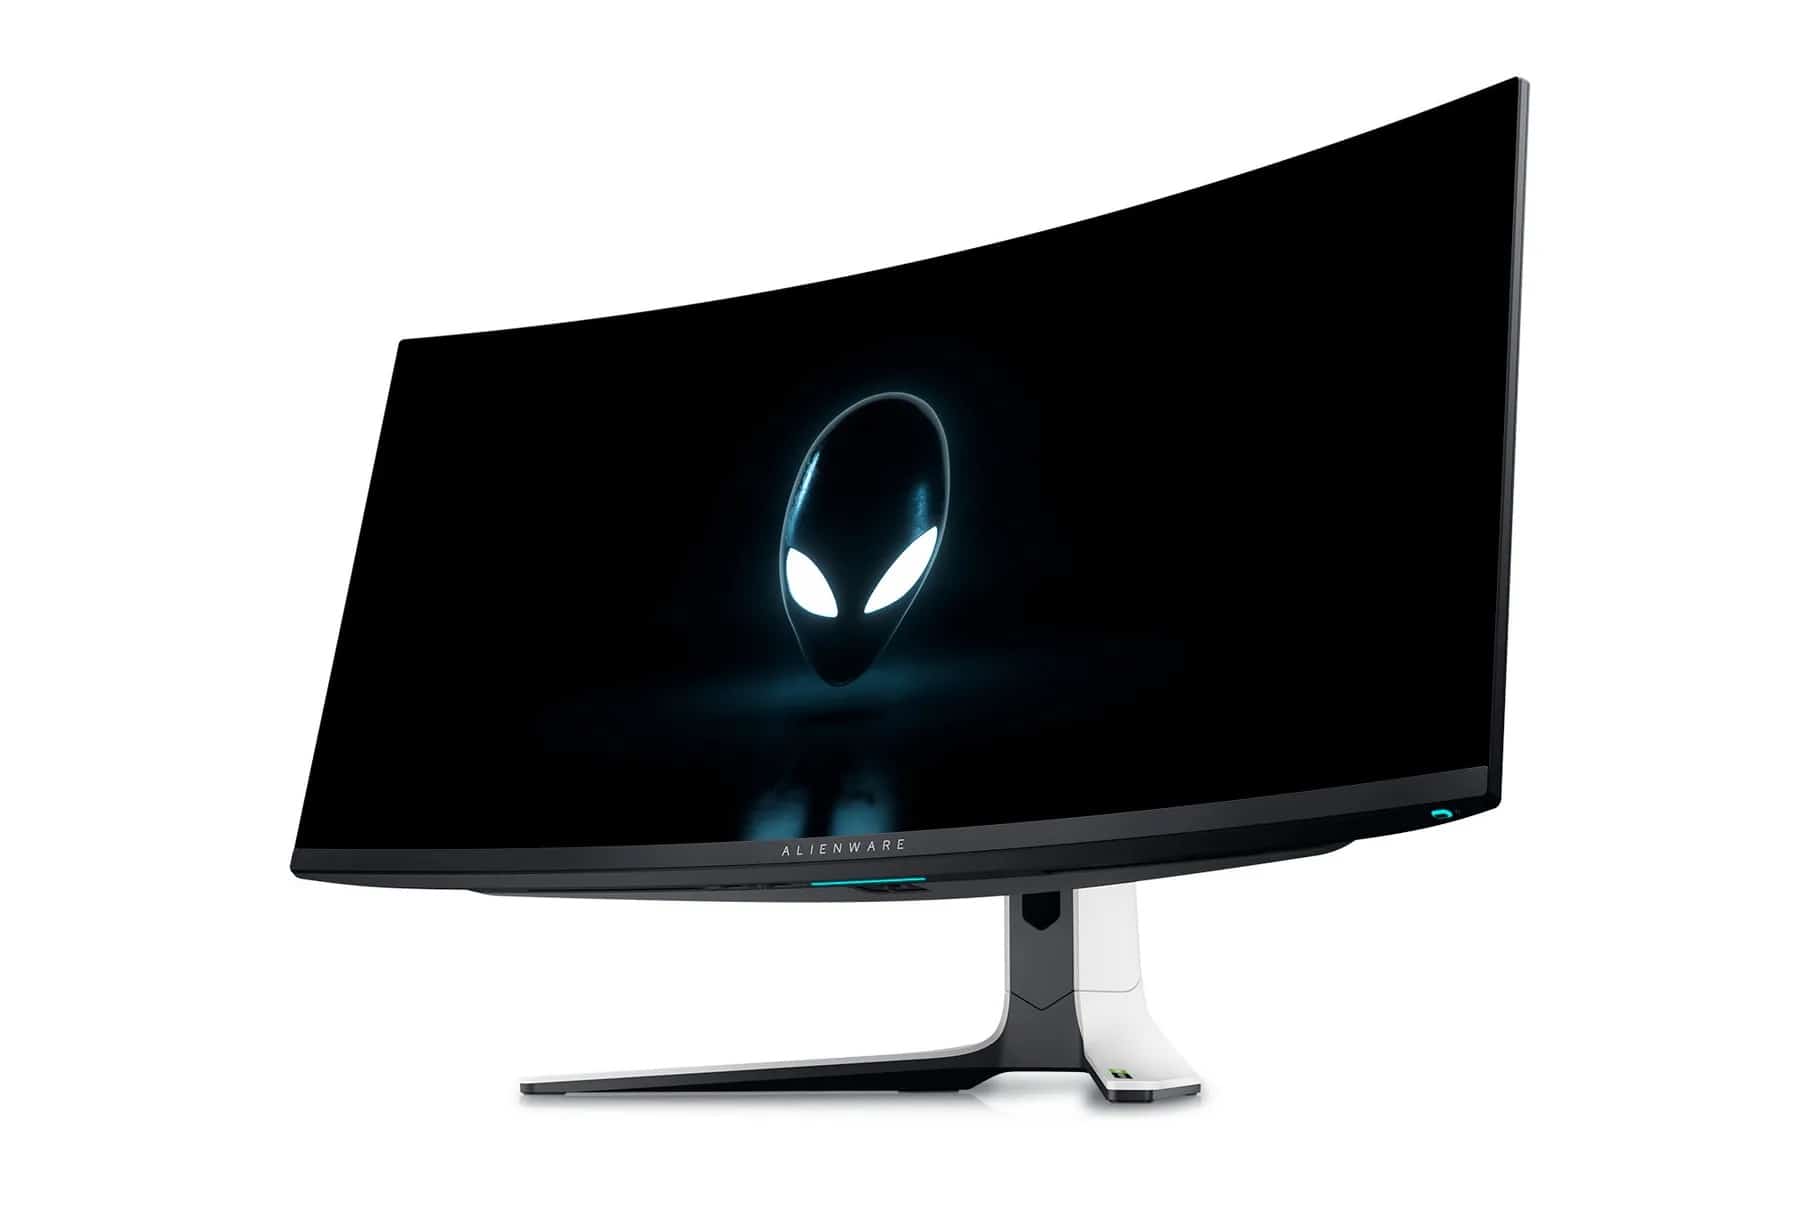 量子點結合 OLED：Alienware 推全新電競屏幕